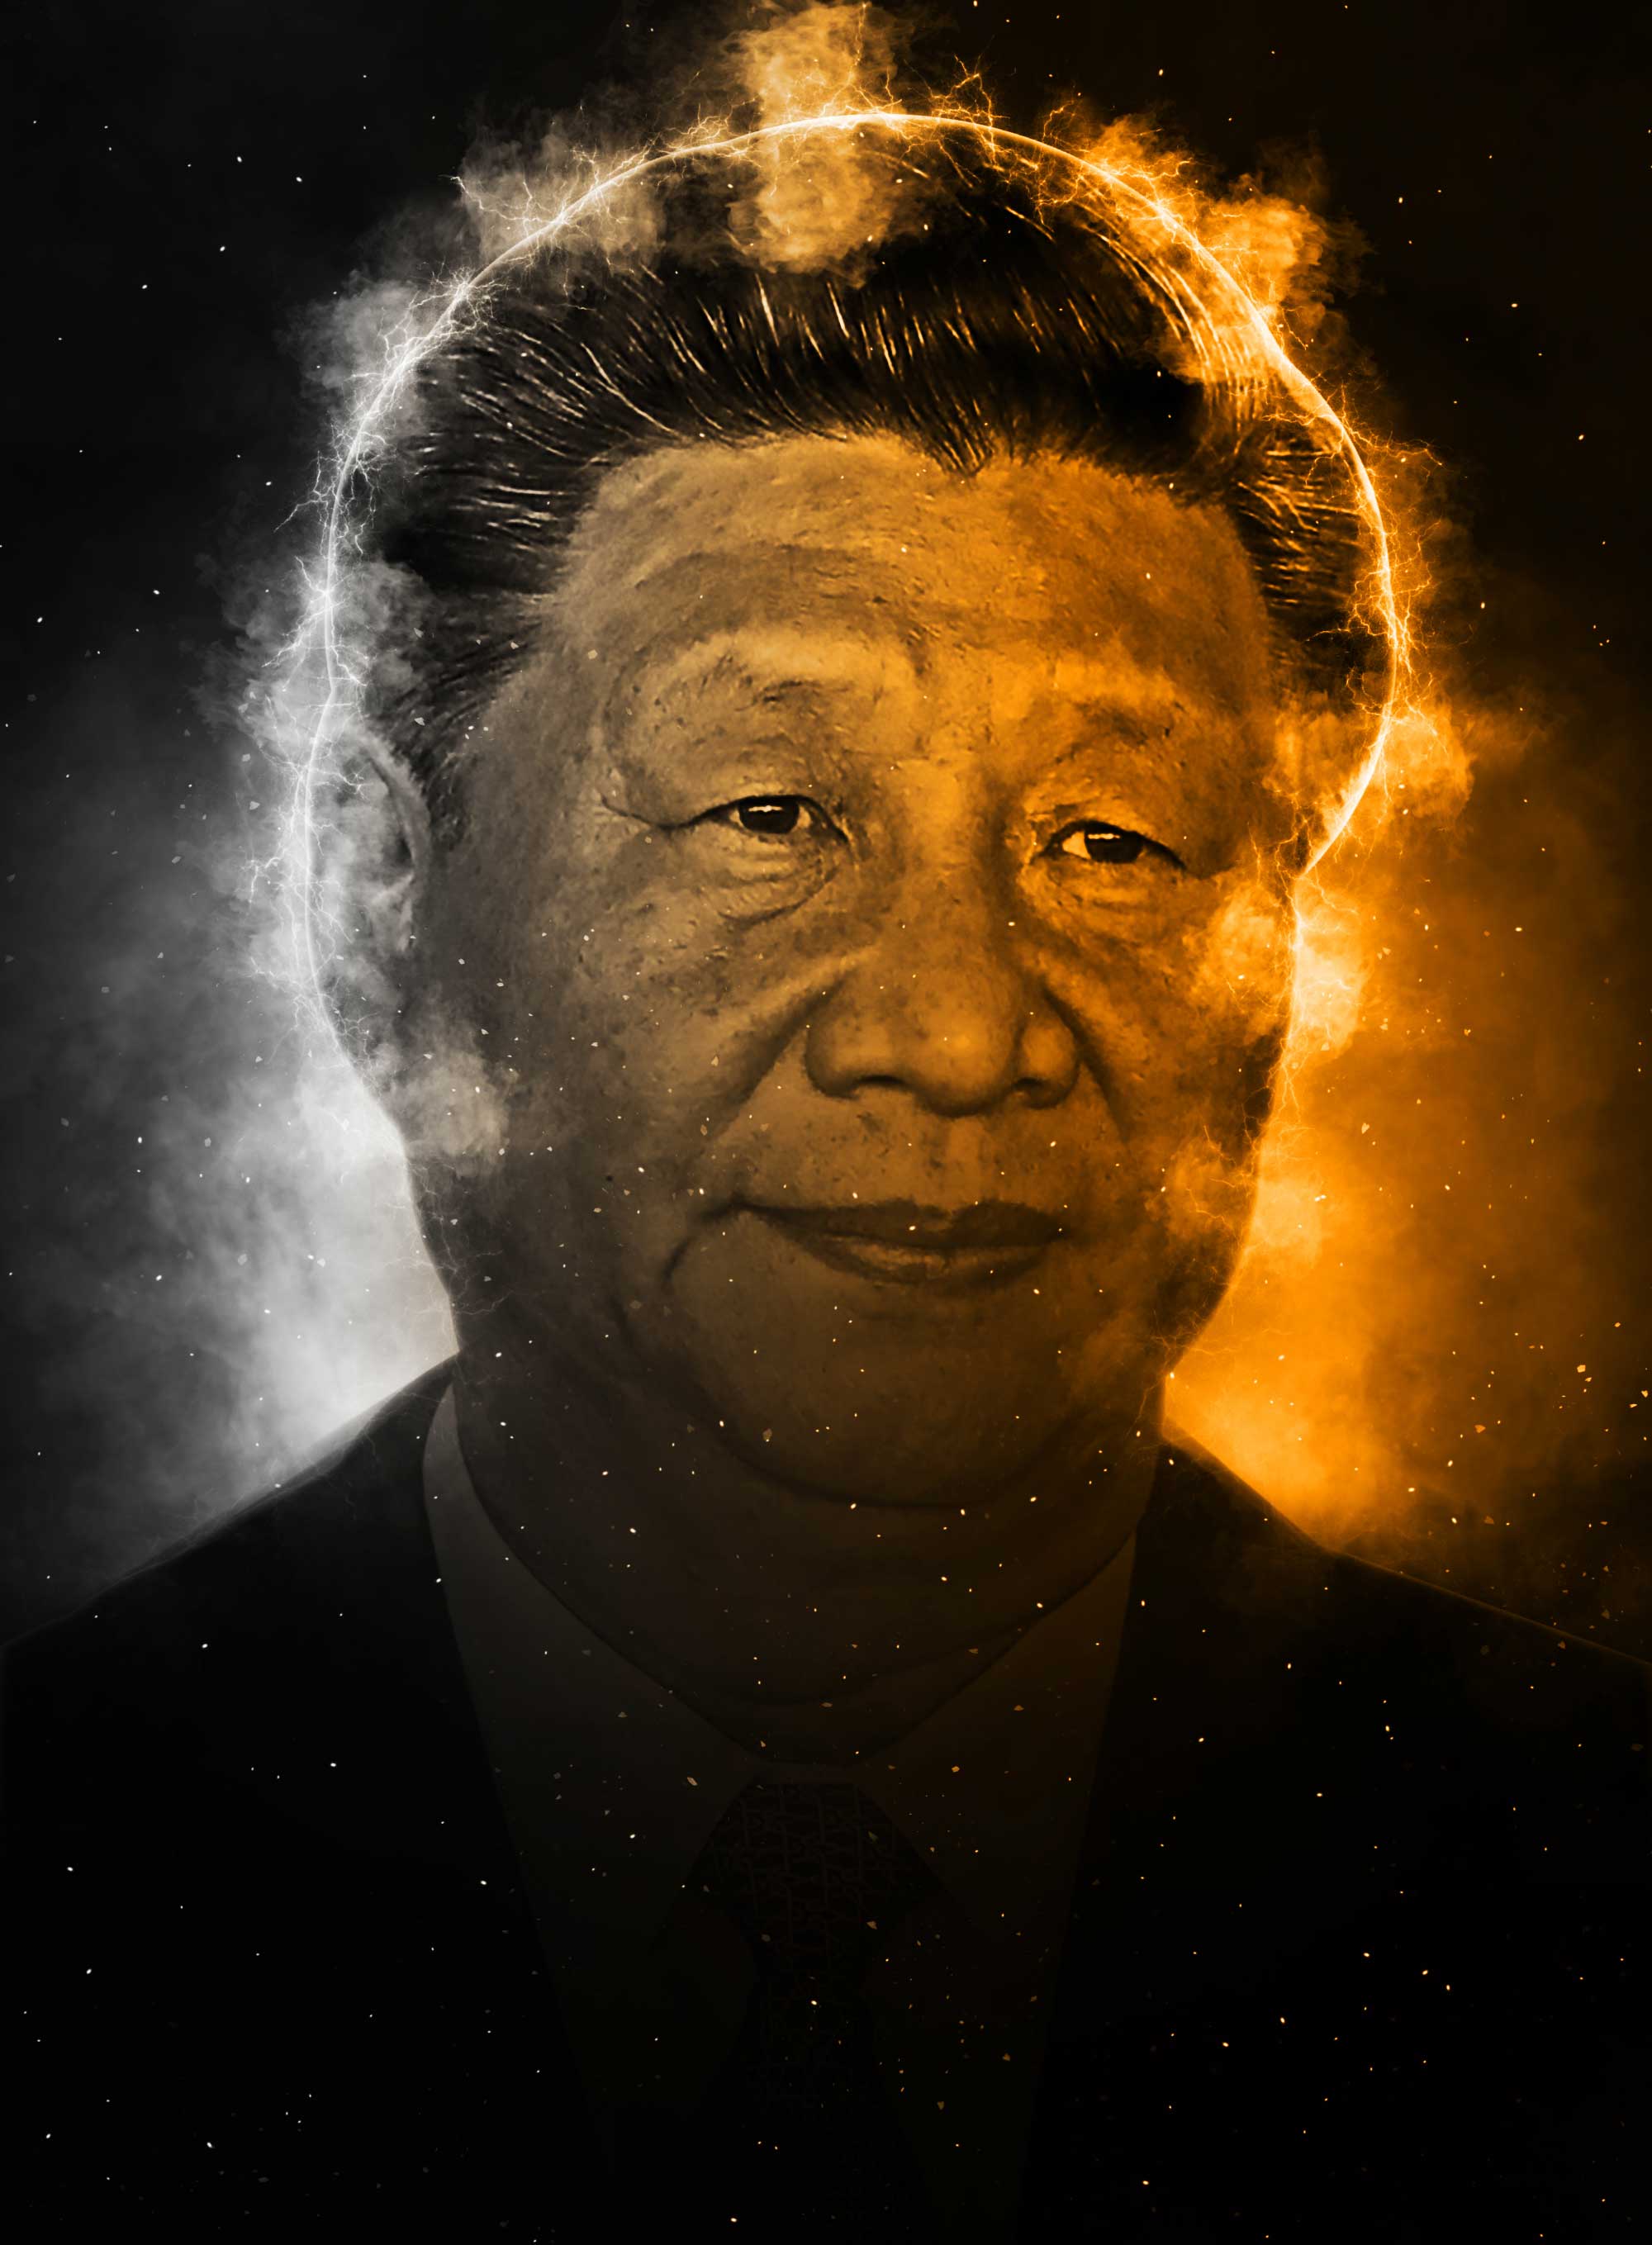 Xi Jinping #001